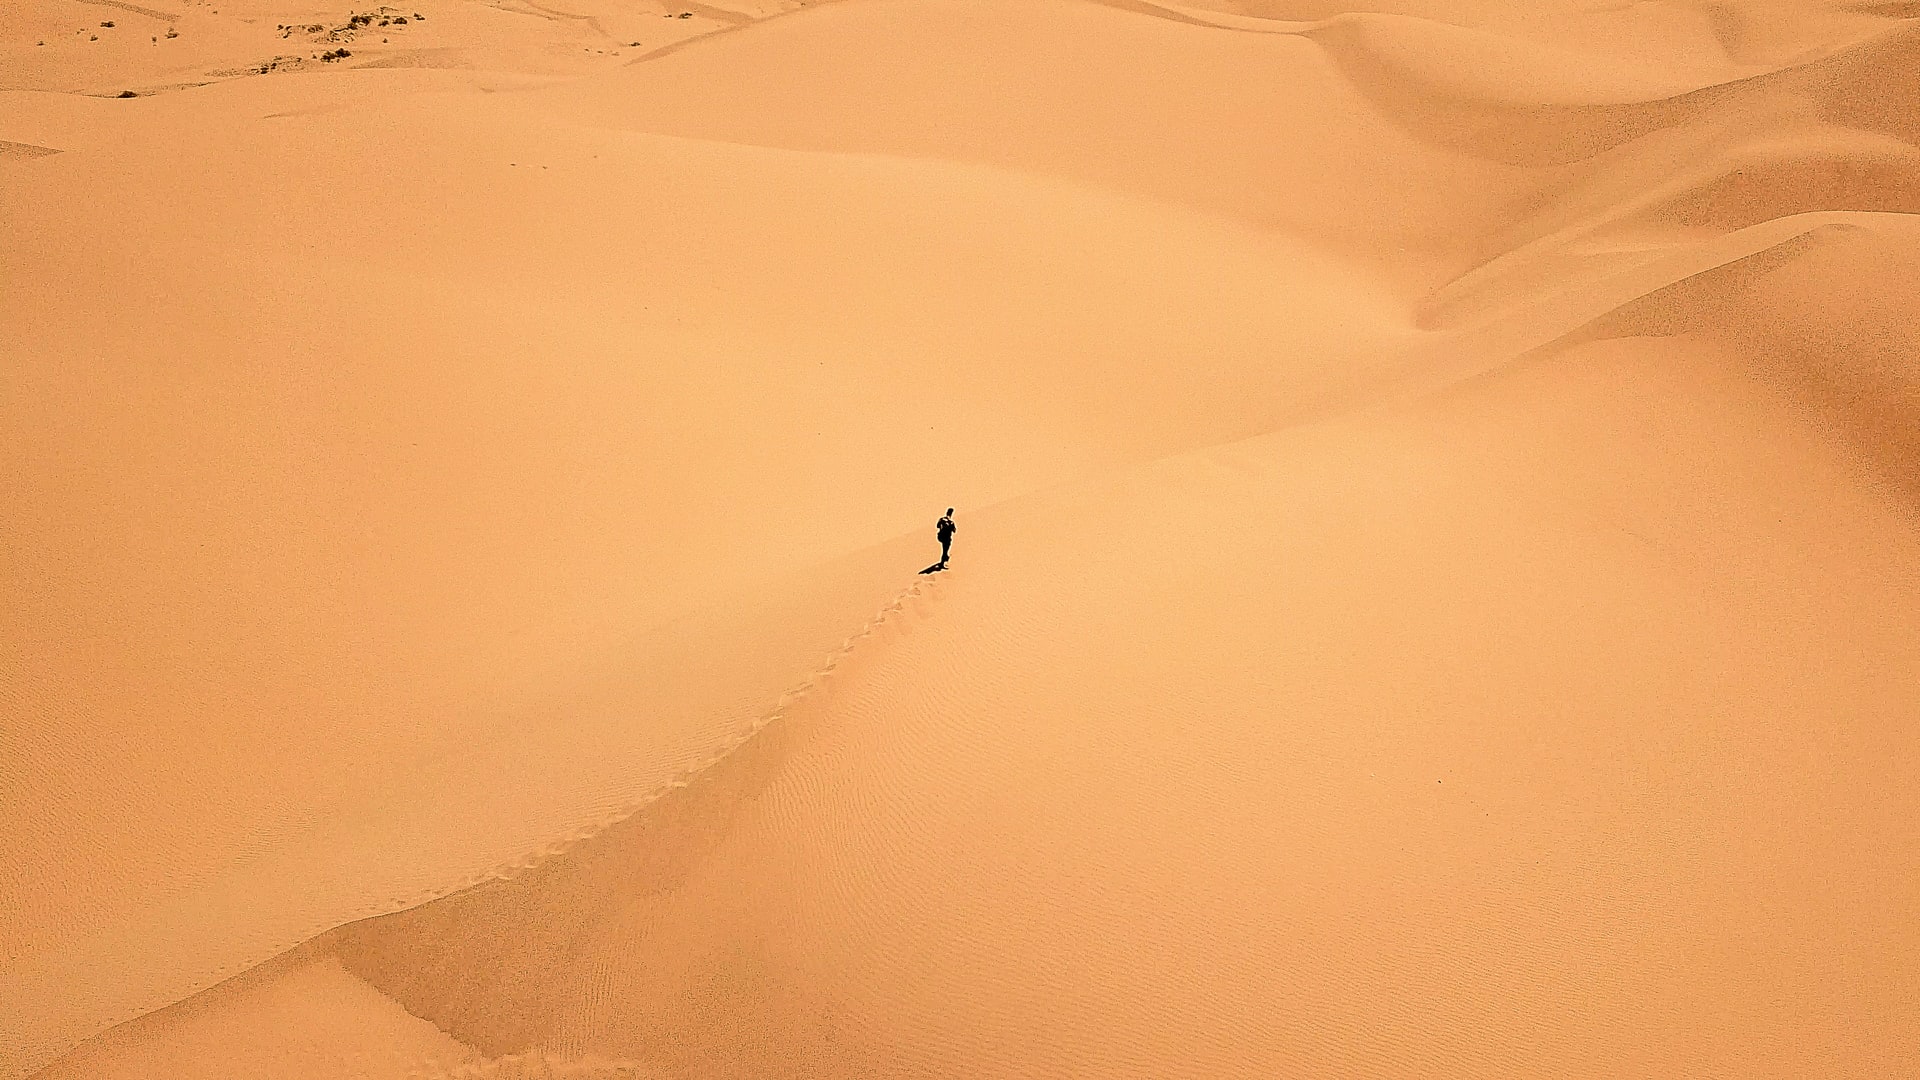 Uma pessoa sozinha e sem muitos recursos no meio de um vasto deserto, visto de cima.